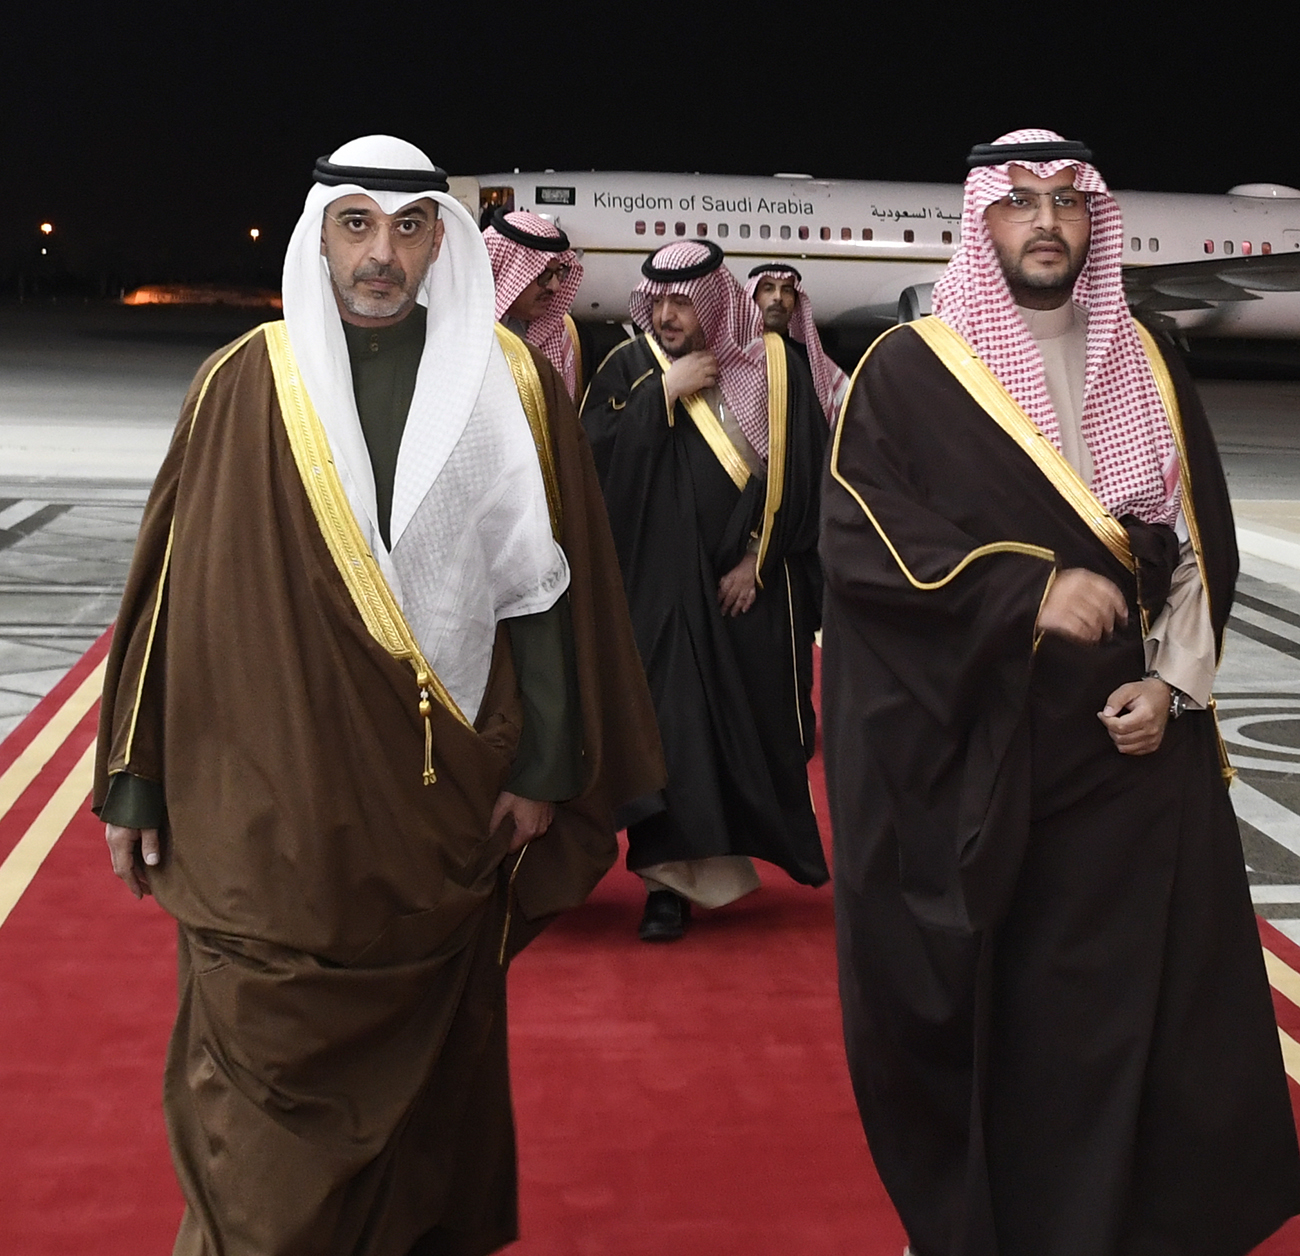 وزير الدولة عضو مجلس الوزراء بالمملكة العربية السعودية يصل إلى البلاد في زيارة رسمية